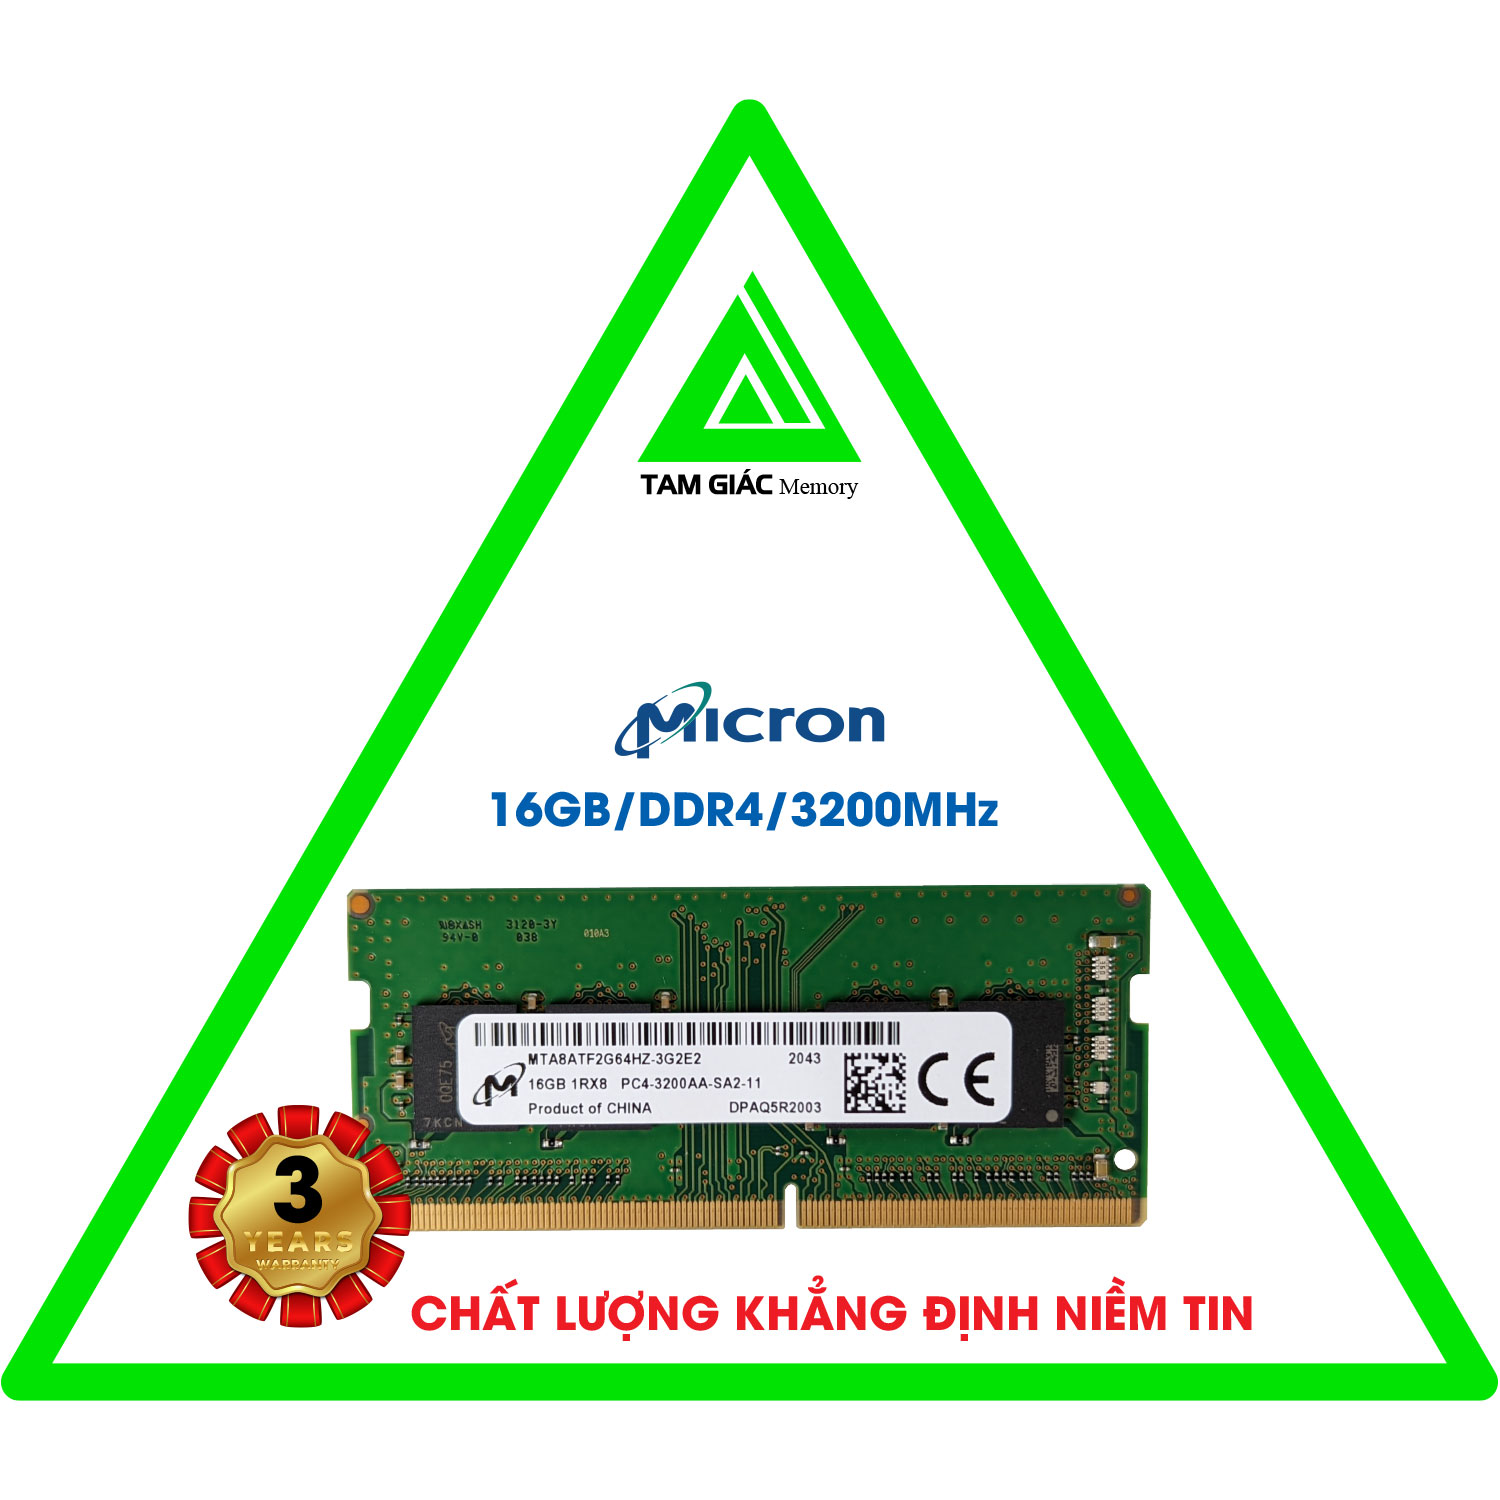 RAM MICRON DDR4 16GB